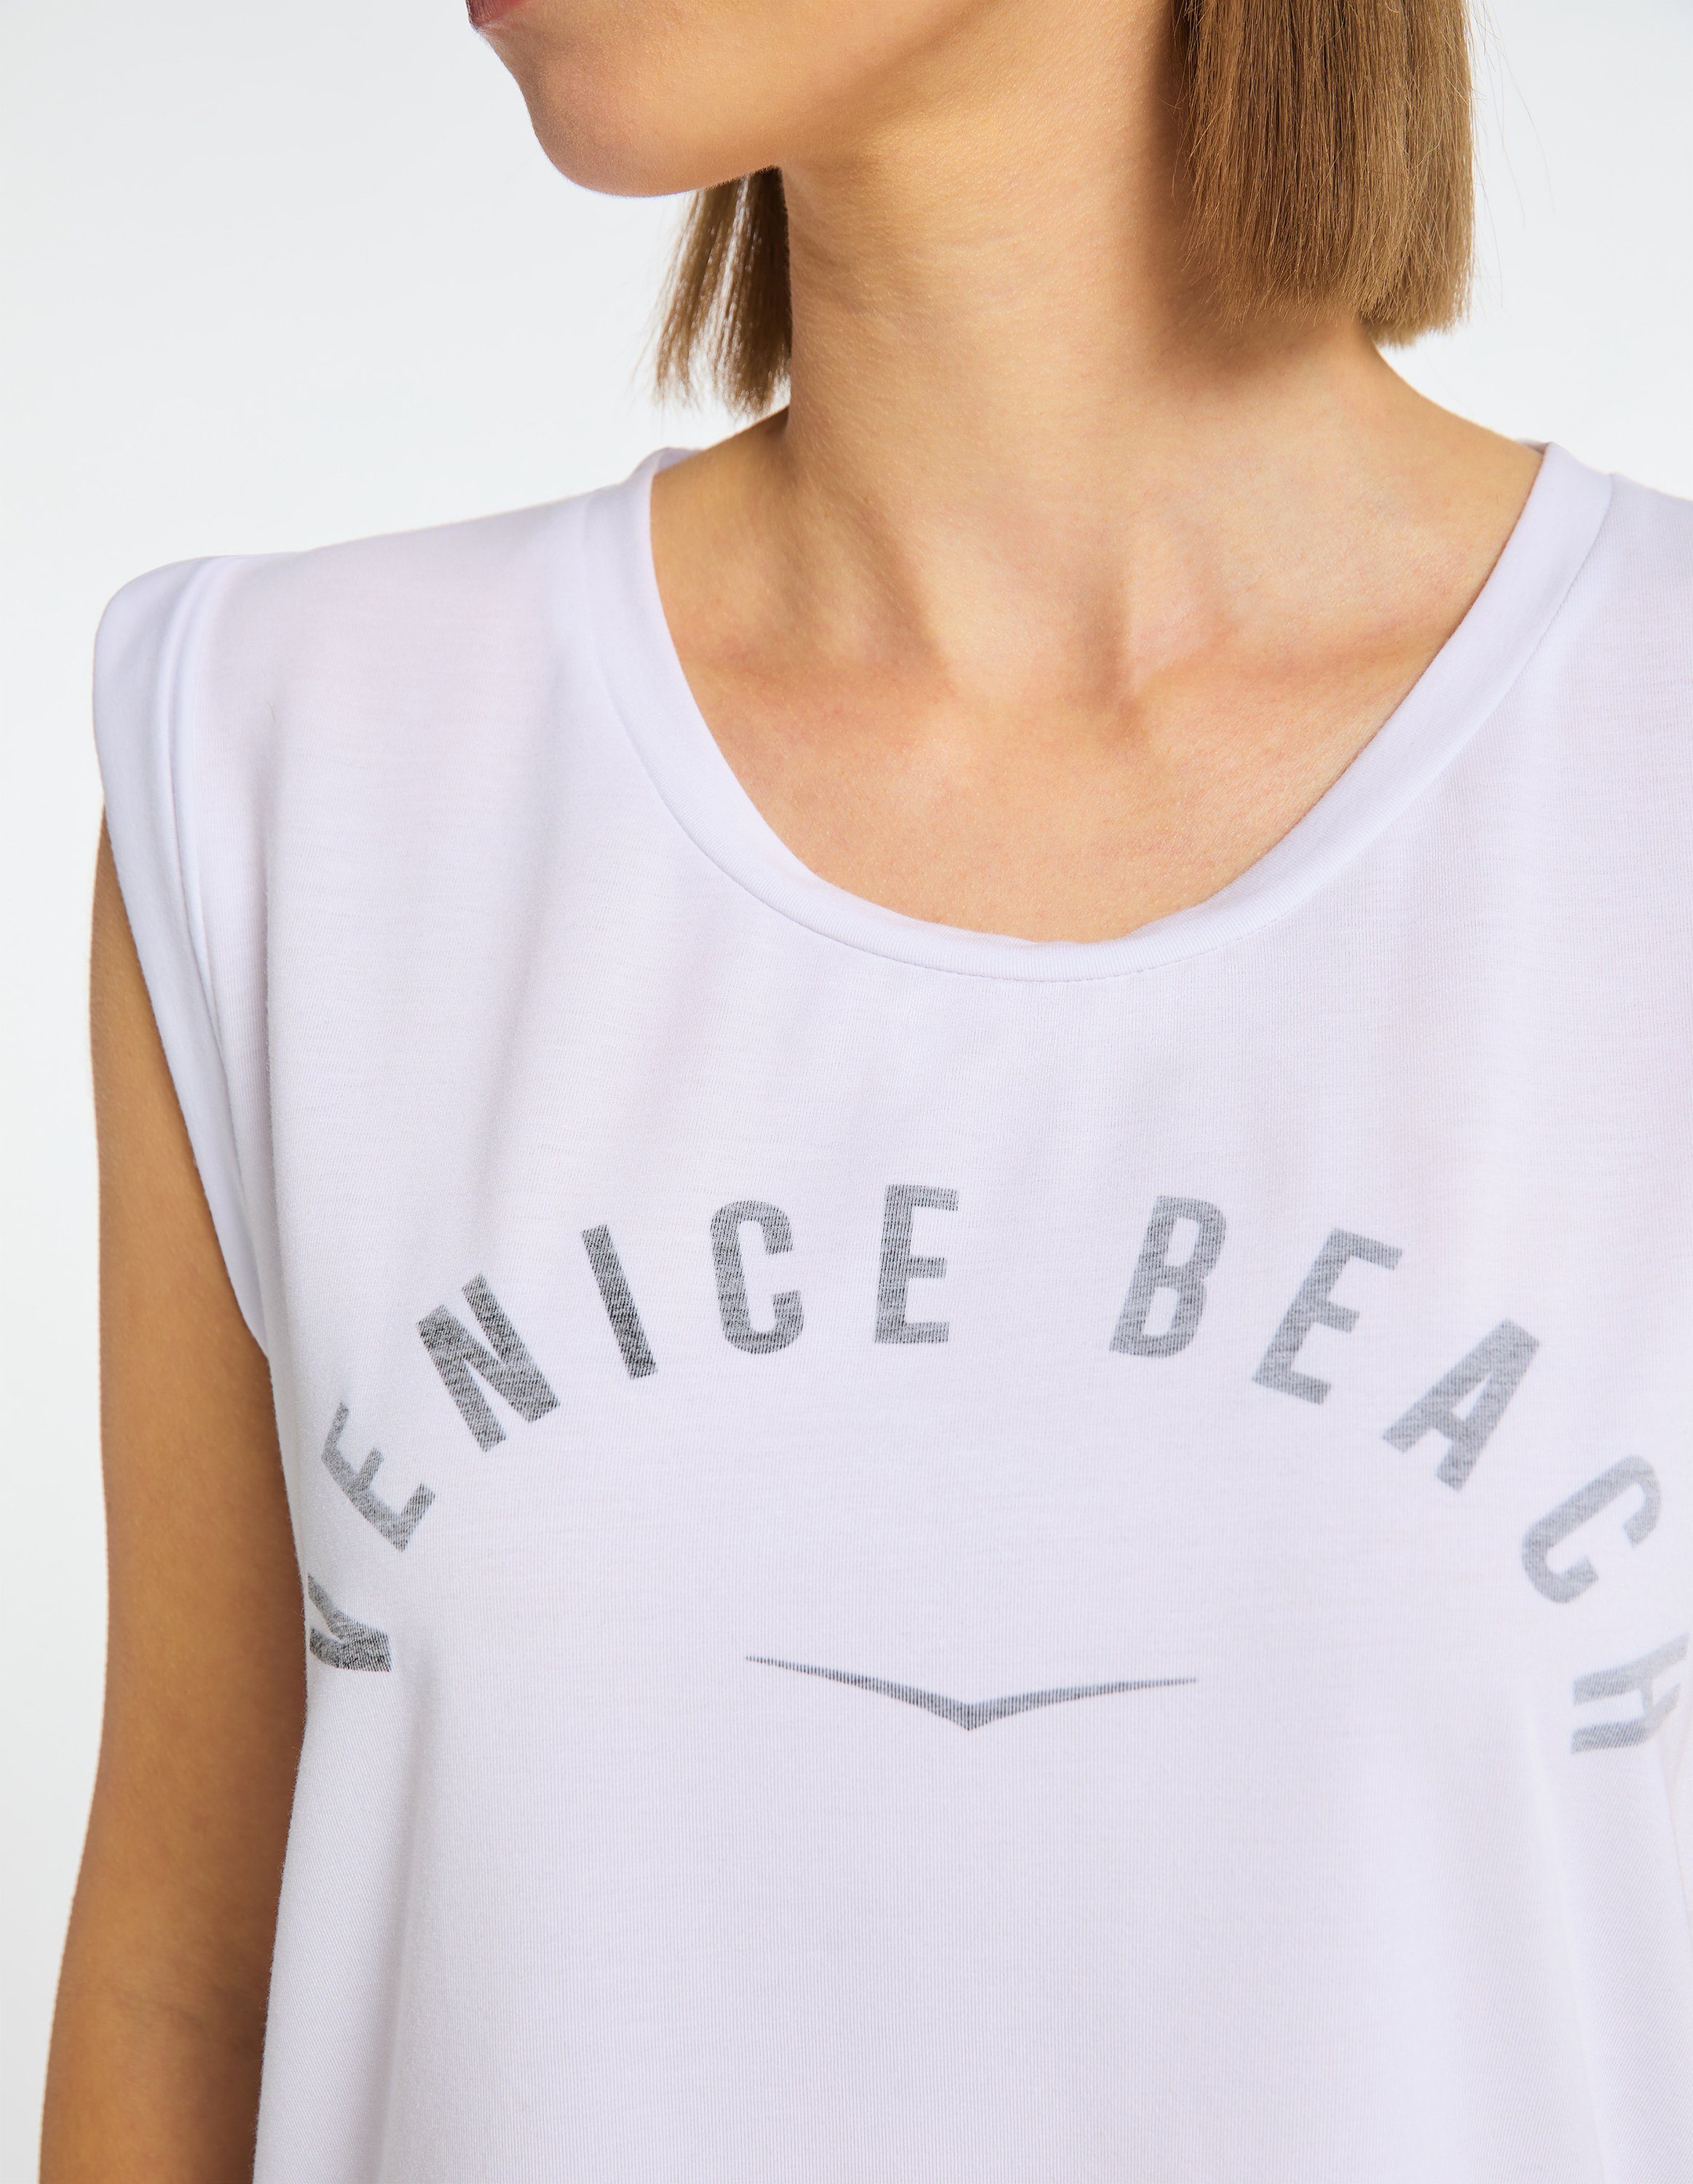 Beach VB Chayanne white Venice T-Shirt T-Shirt